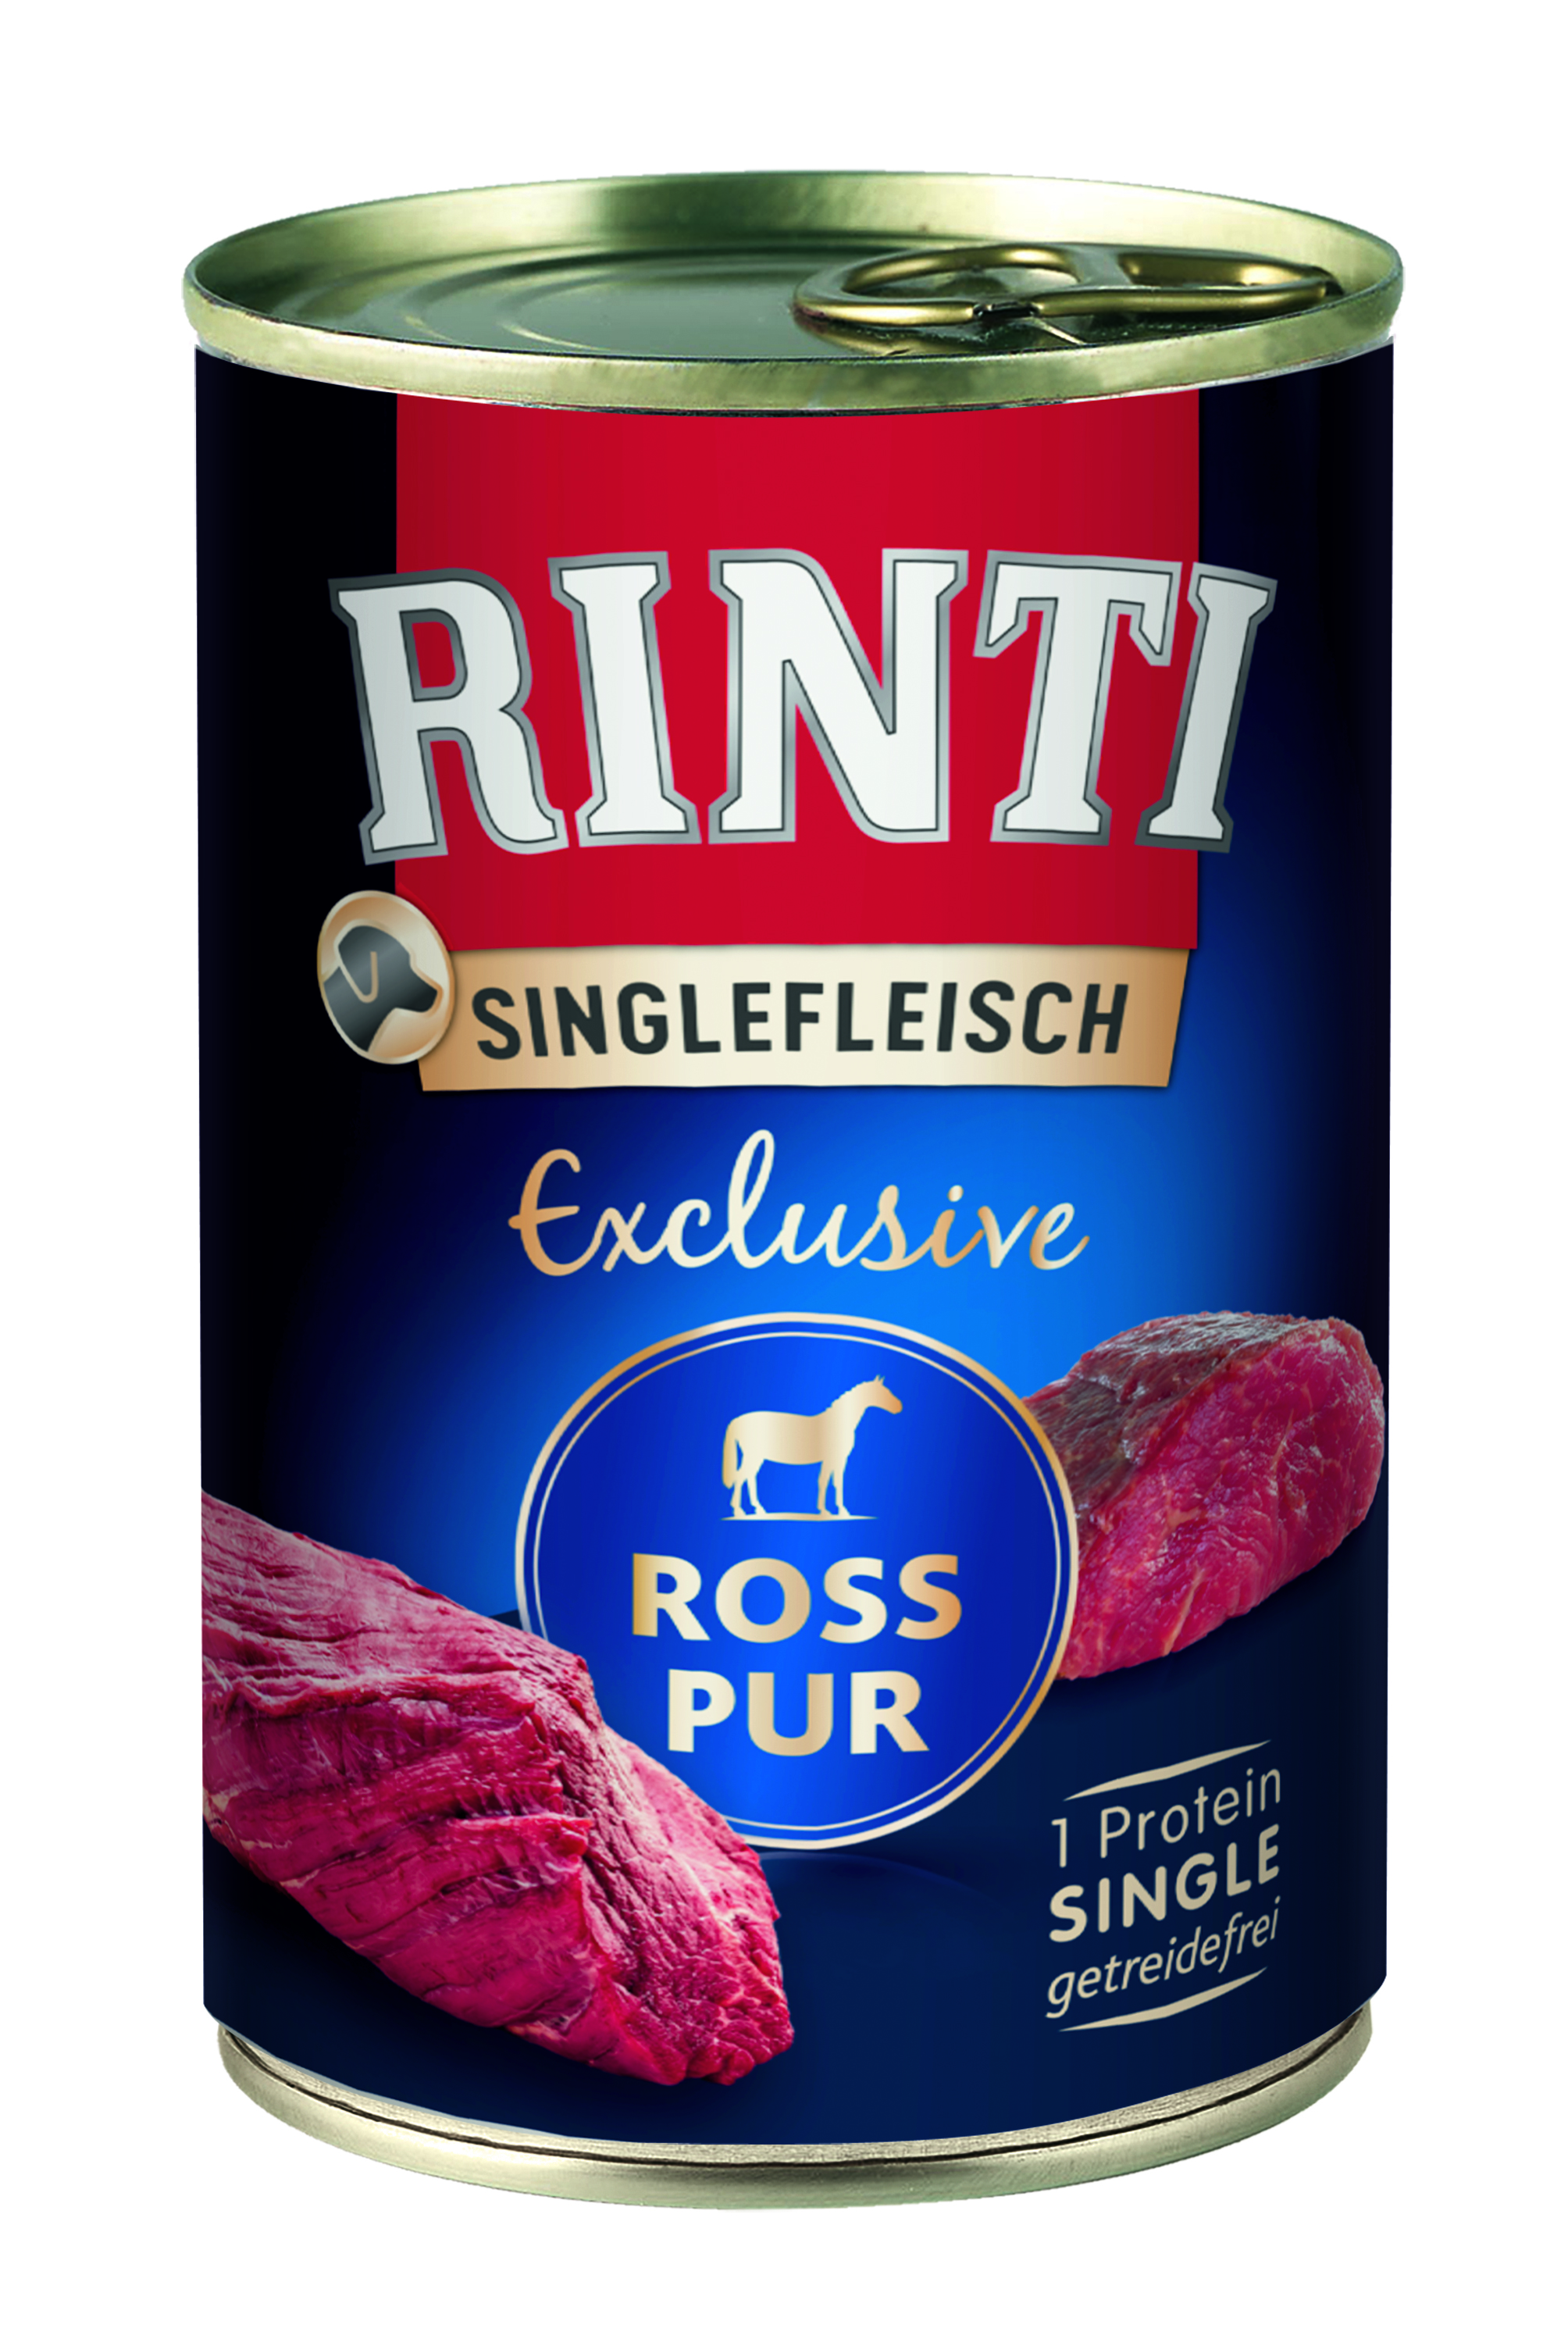 Rinti Singlefleisch Exclusive Ross Pur 400g